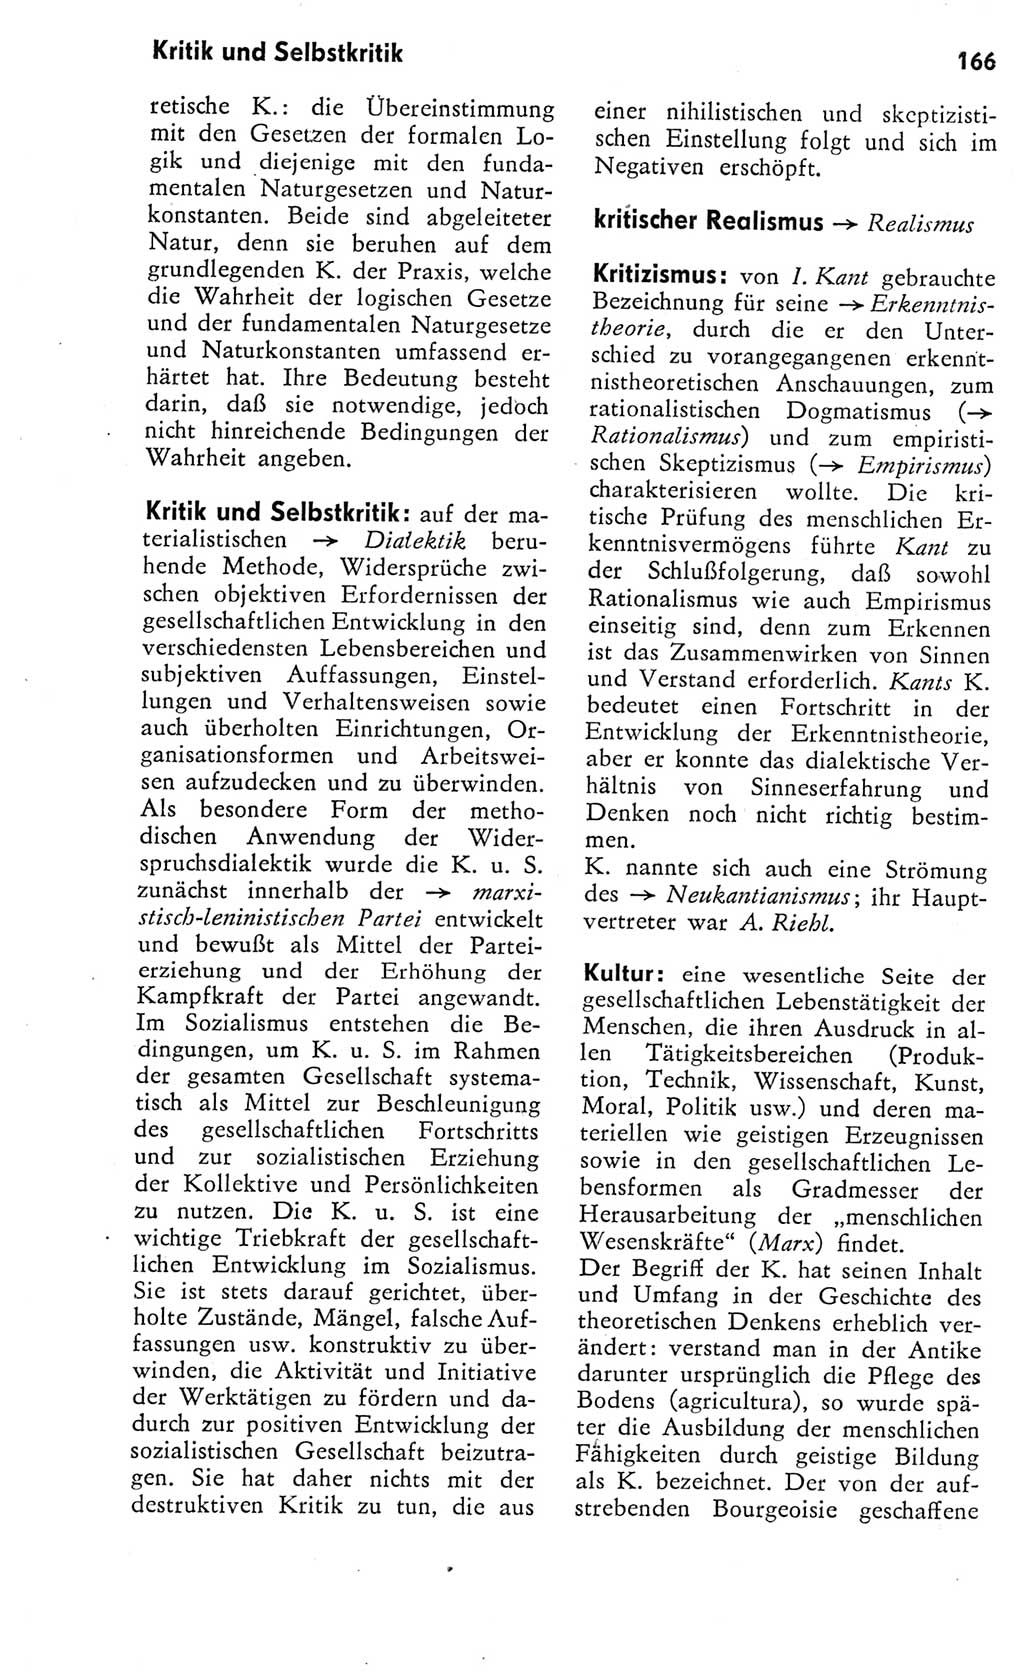 Kleines Wörterbuch der marxistisch-leninistischen Philosophie [Deutsche Demokratische Republik (DDR)] 1975, Seite 166 (Kl. Wb. ML Phil. DDR 1975, S. 166)